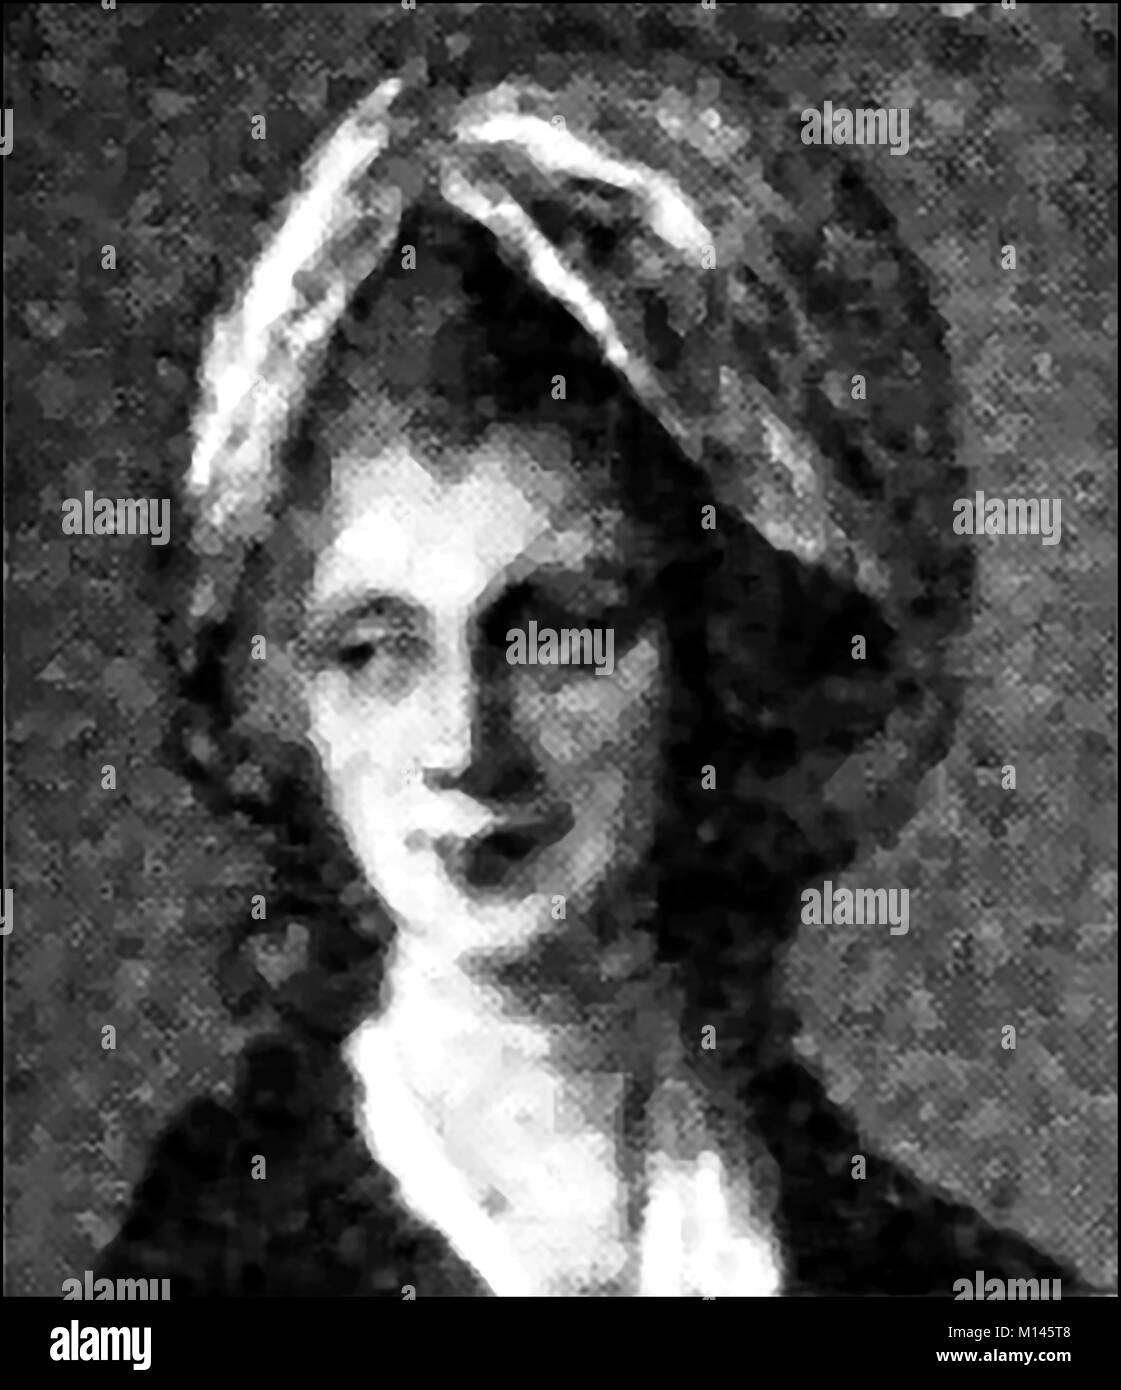 Königin Sophie Charlotte von Mecklenburg-Strelitz (1744-1818) Ehefrau von König Georg III. von Großbritannien und Irland, Kurfürstin von Hannover - Eine 1921 gedruckte Portrait - sie war ein Bewunderer, Botaniker, der half, Kew Gardens, London Stockfoto